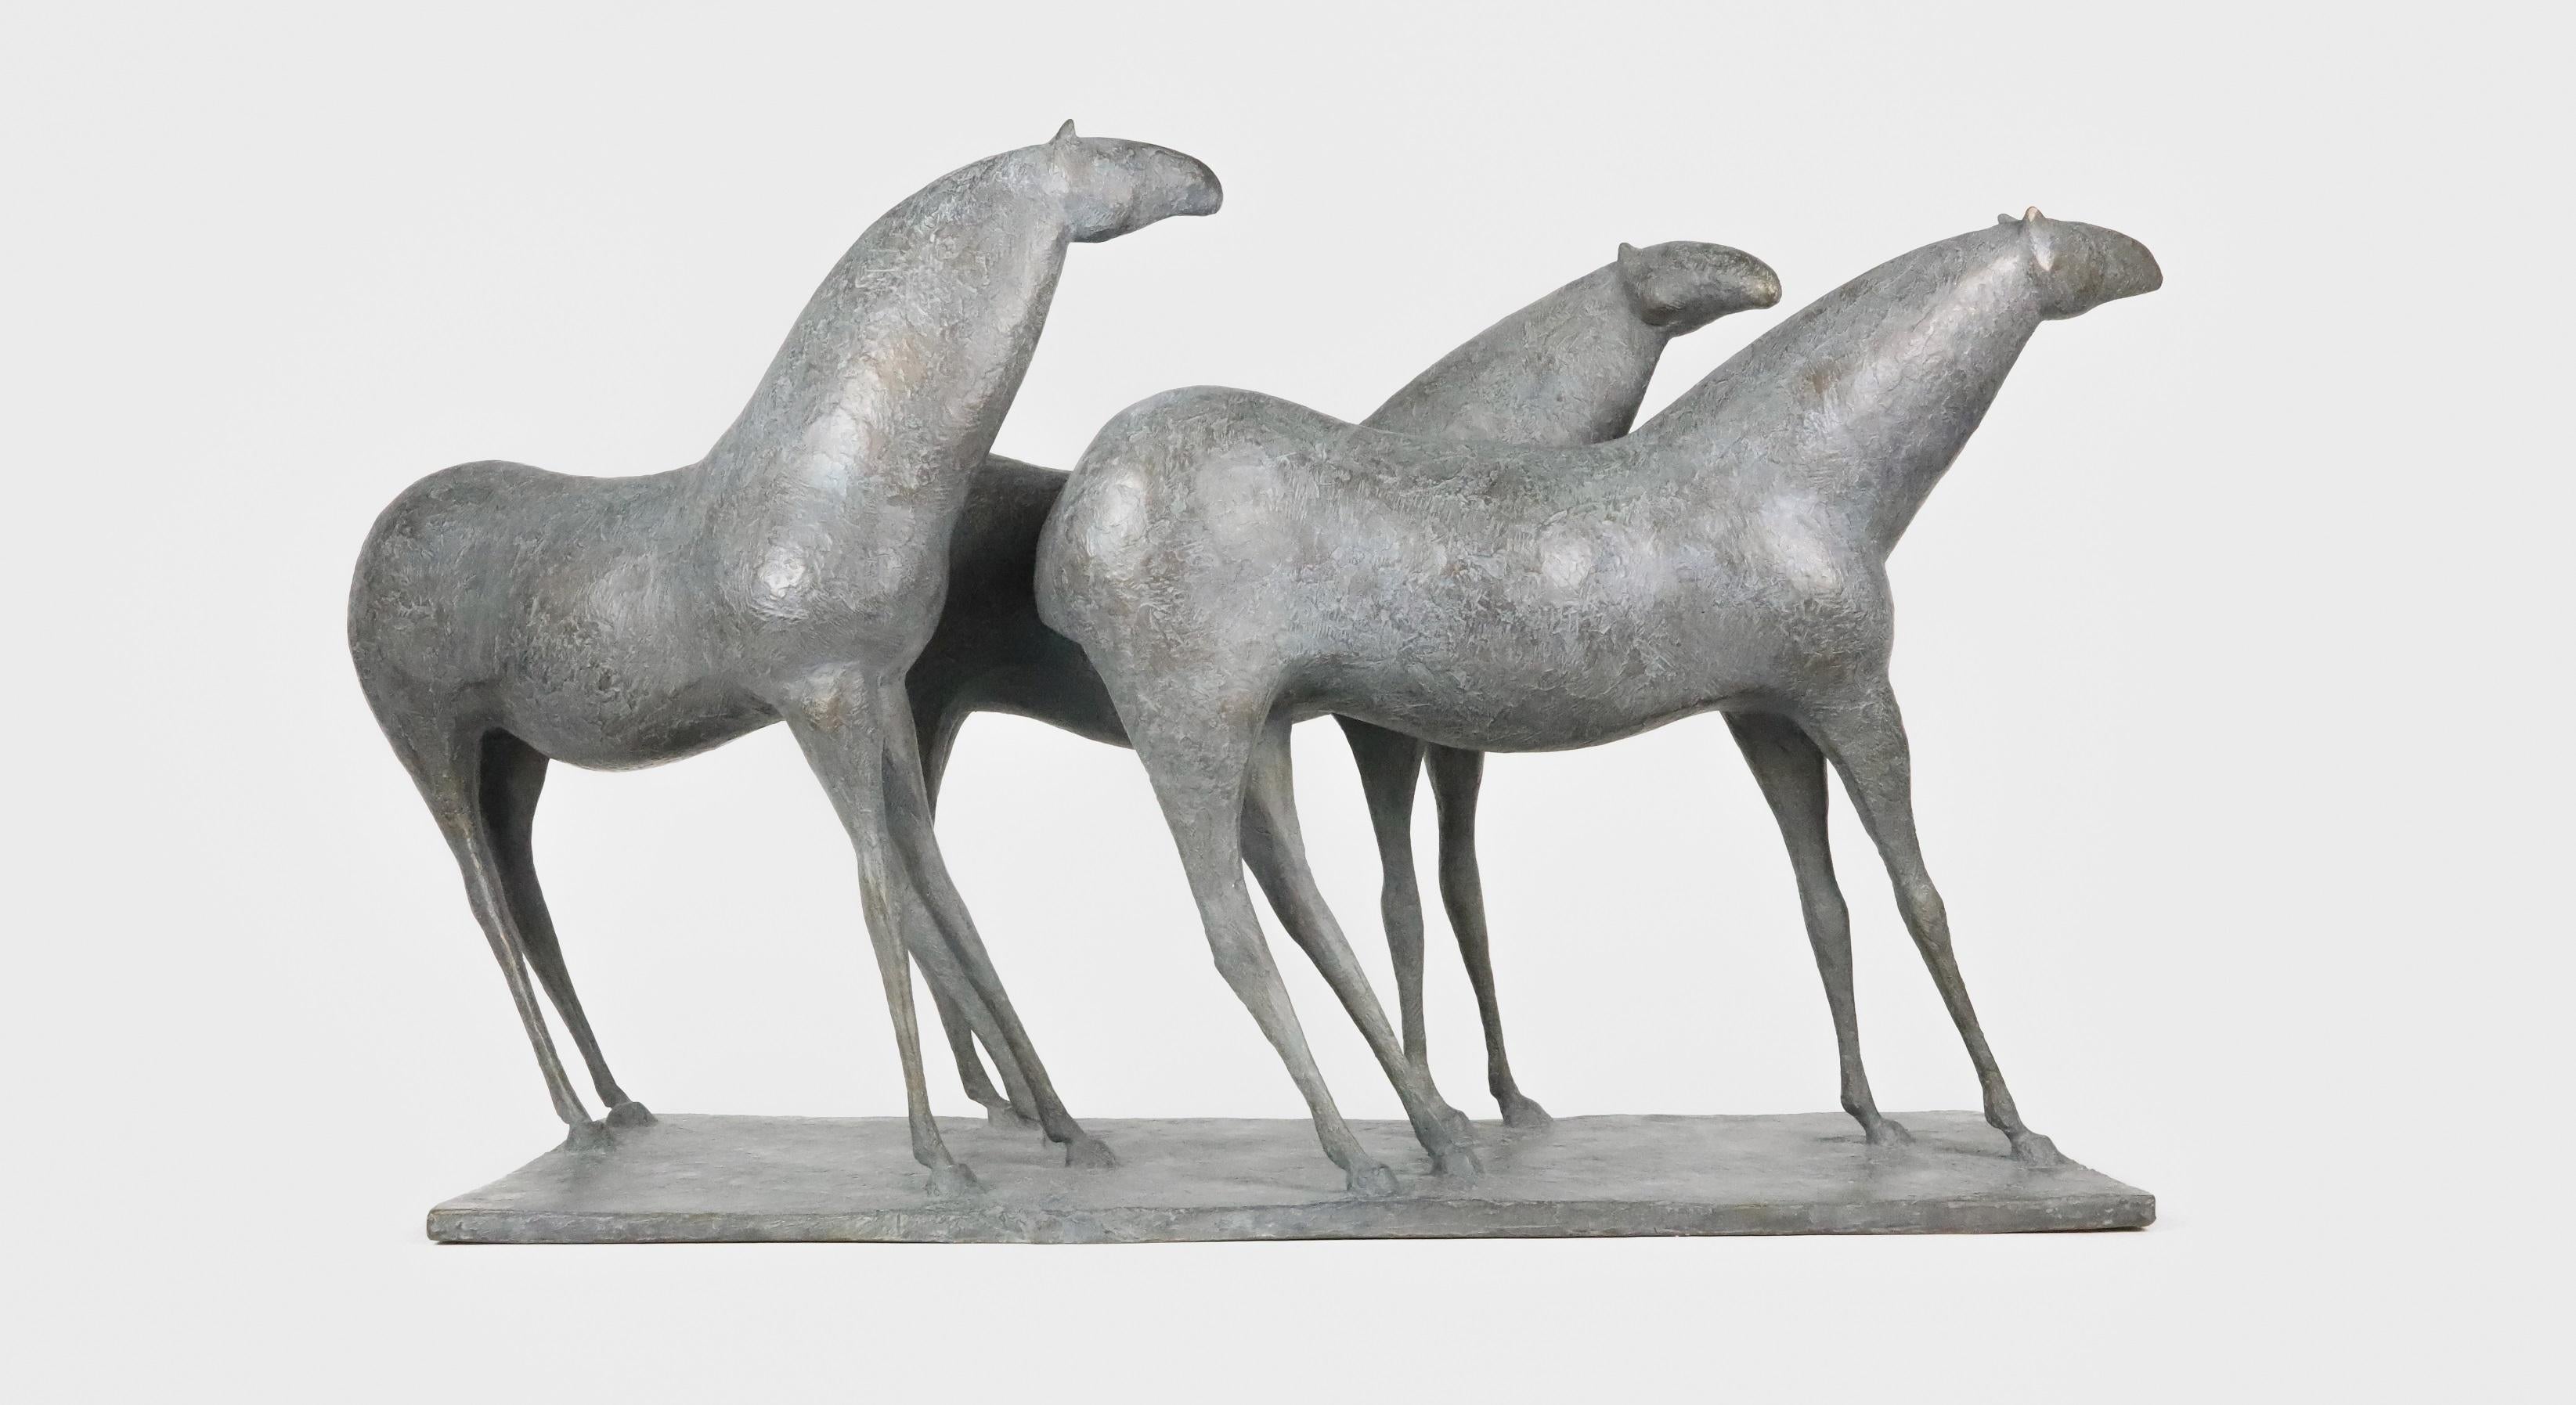 Three Horses ist eine Bronzeskulptur des französischen zeitgenössischen Künstlers Pierre Yermia mit den Maßen 52 cm × 93 cm × 30 cm (20,5 × 36,6 × 11,8 in). Die Skulptur ist signiert und nummeriert, gehört zu einer limitierten Auflage von 8